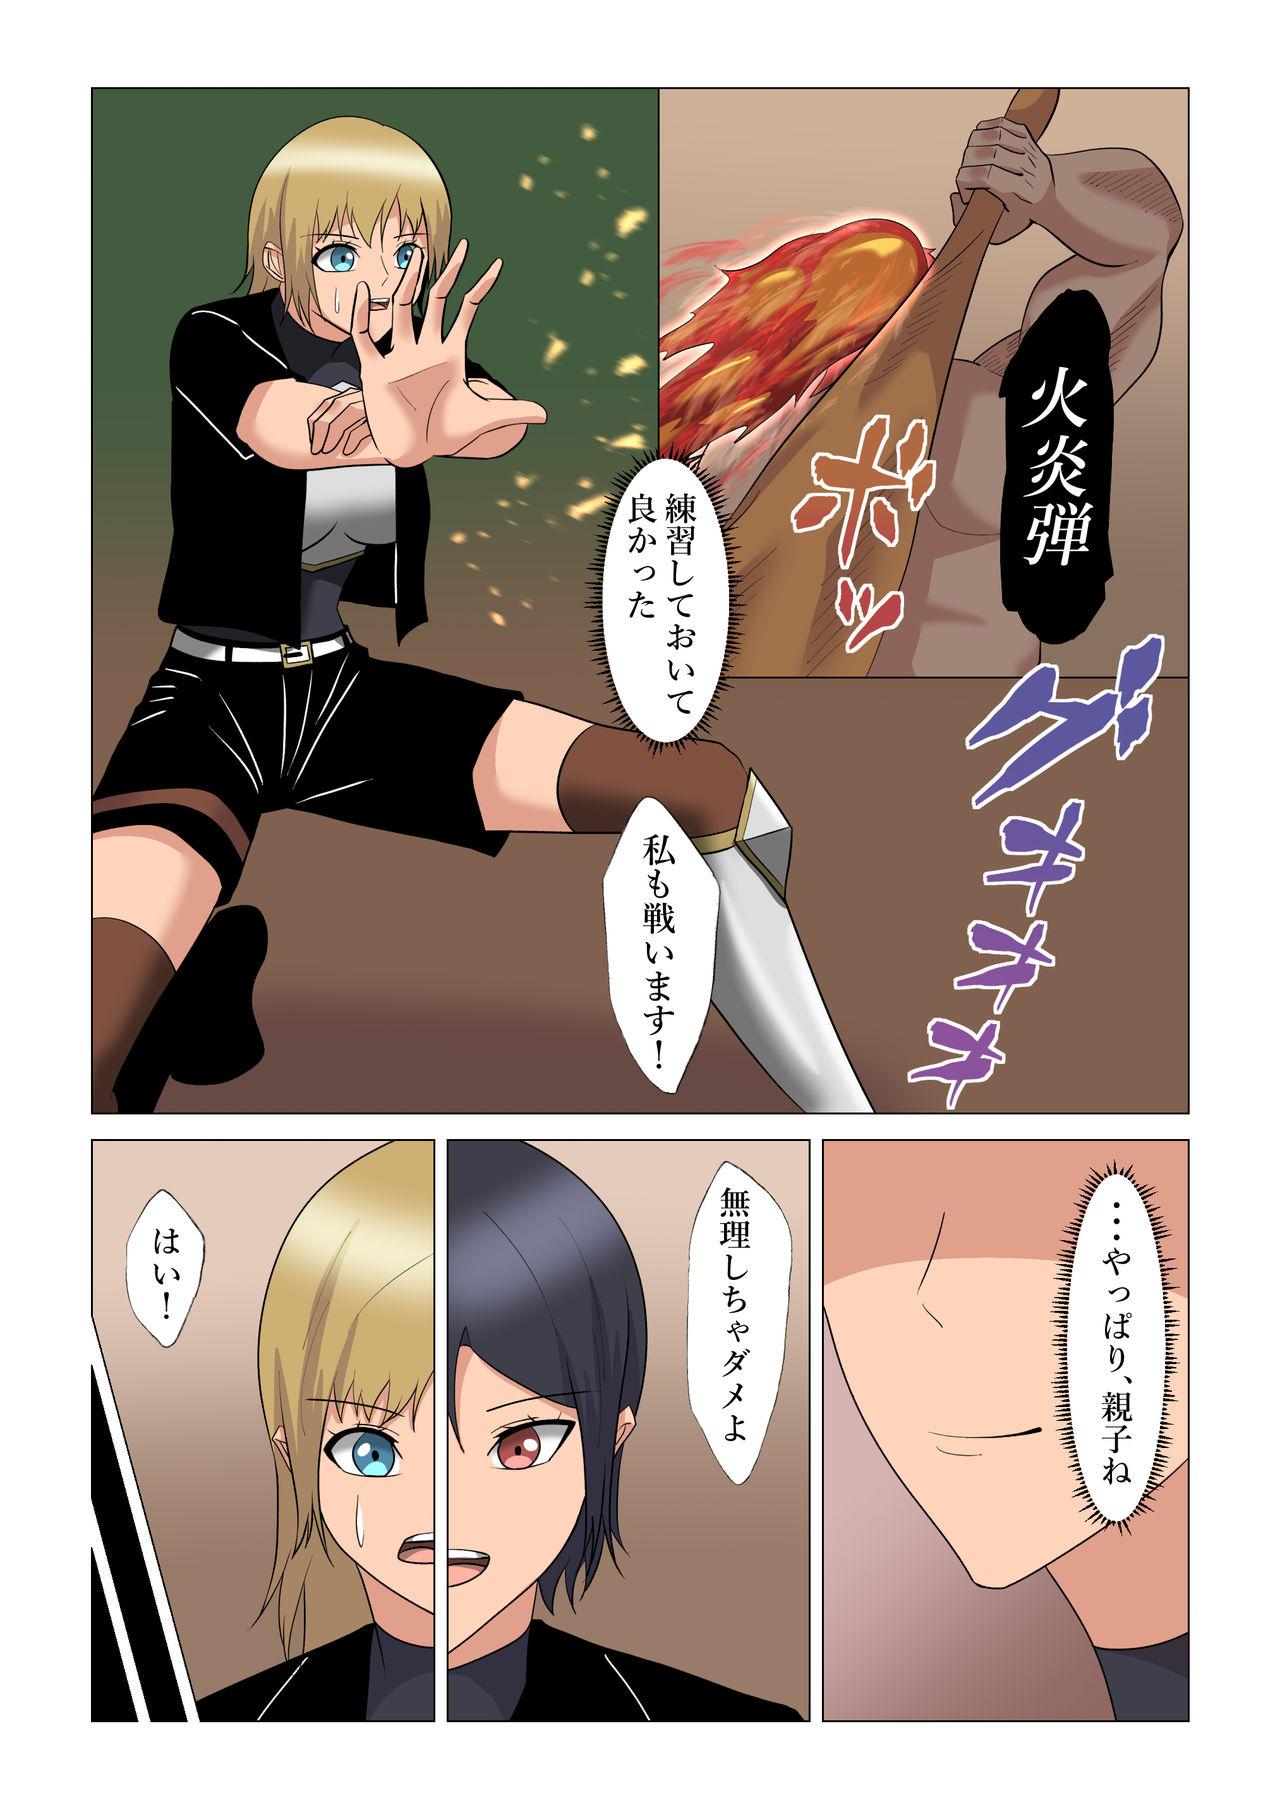 4some "Seme"zuki na "Uke"tsukejou-san 4 - Original Free Blow Job - Page 10